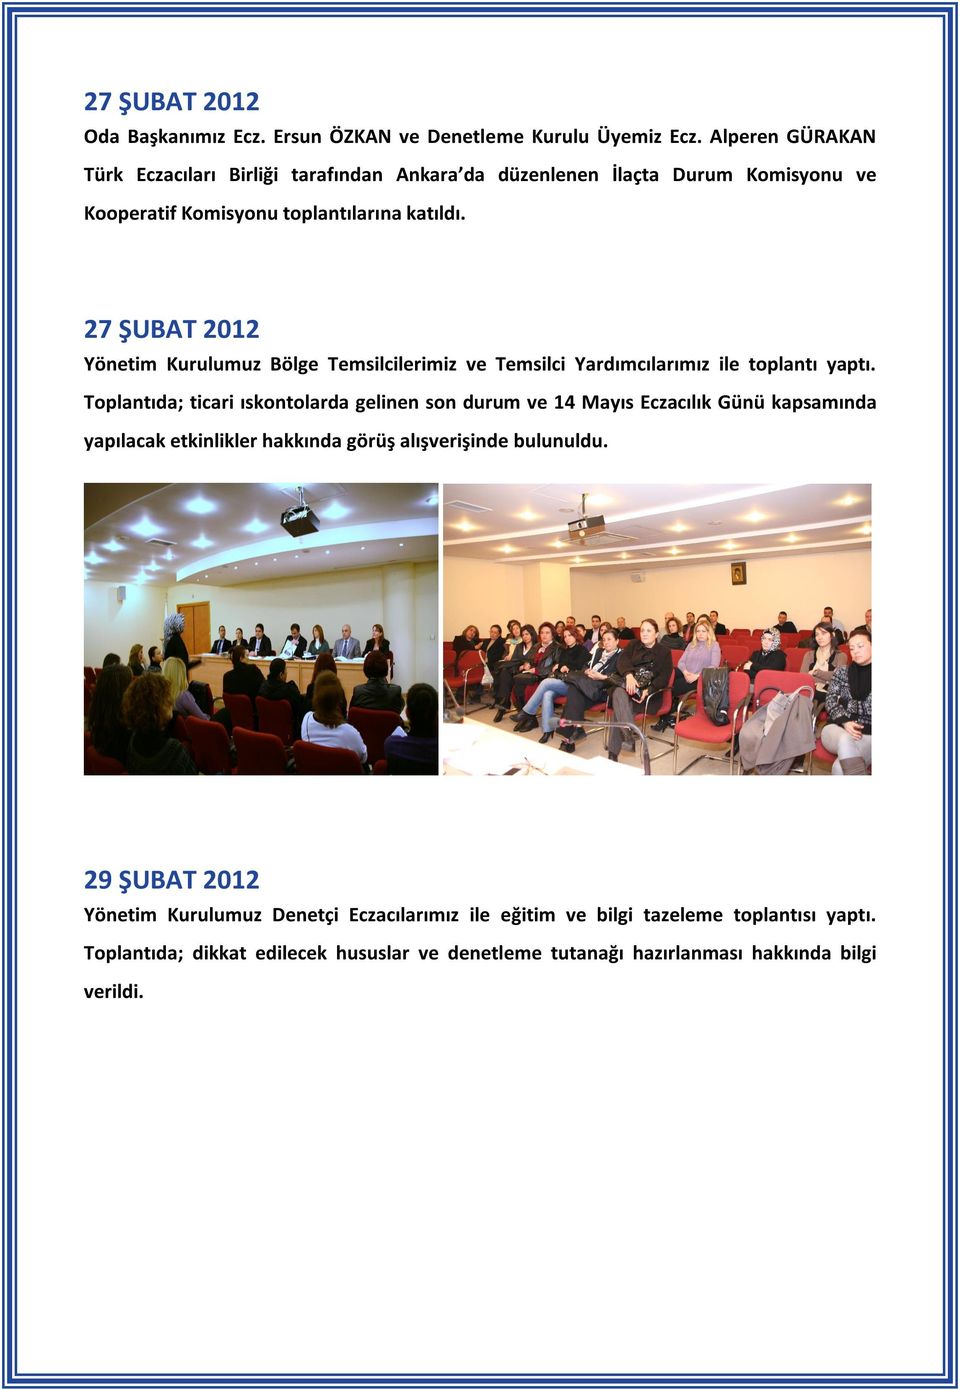 27 ŞUBAT 2012 Yönetim Kurulumuz Bölge Temsilcilerimiz ve Temsilci Yardımcılarımız ile toplantı yaptı.